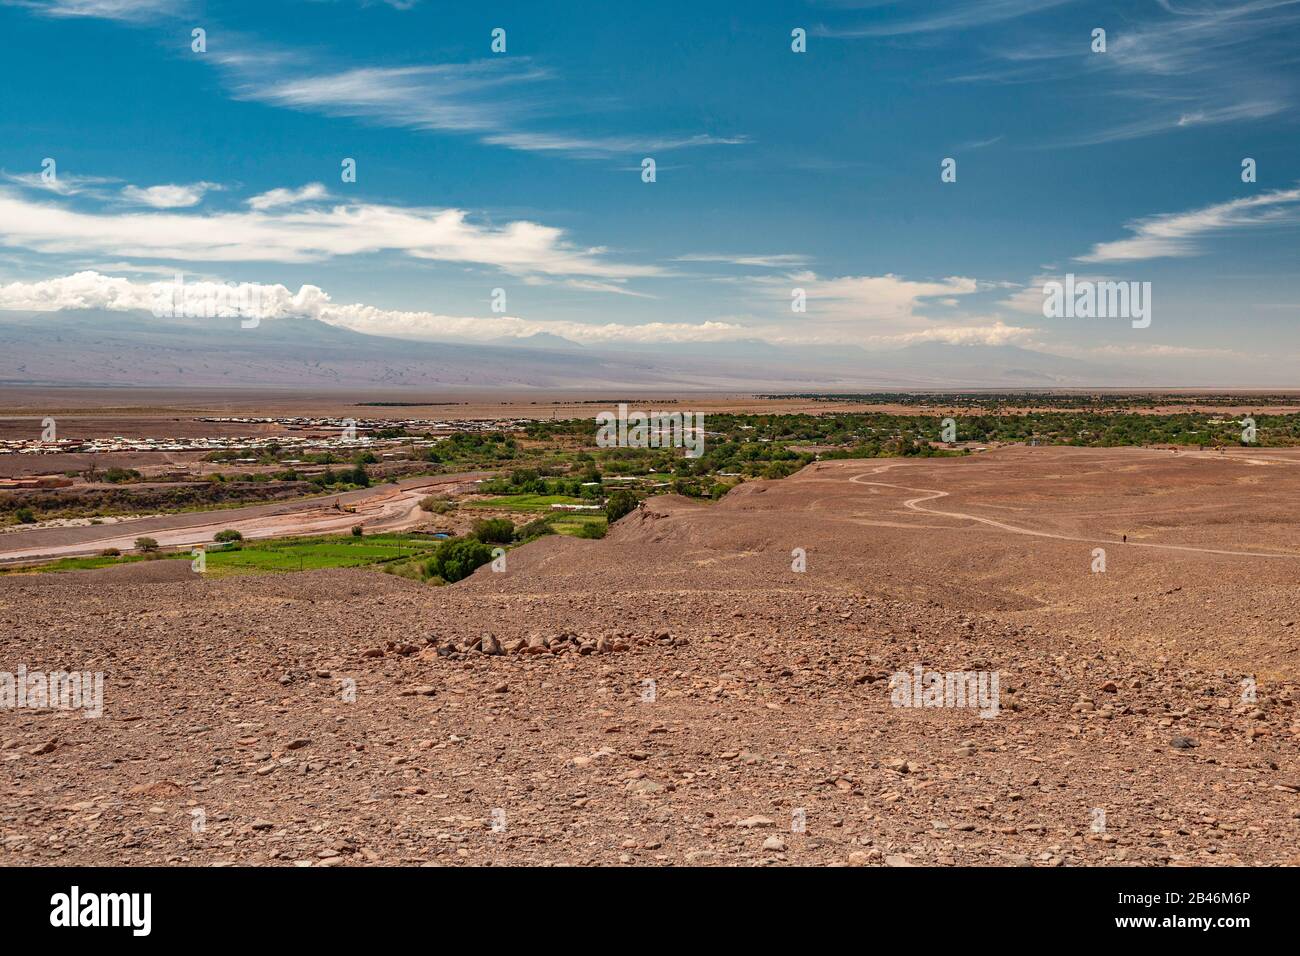 La ville de San Pedro de Atacama dans le nord du Chili. Banque D'Images